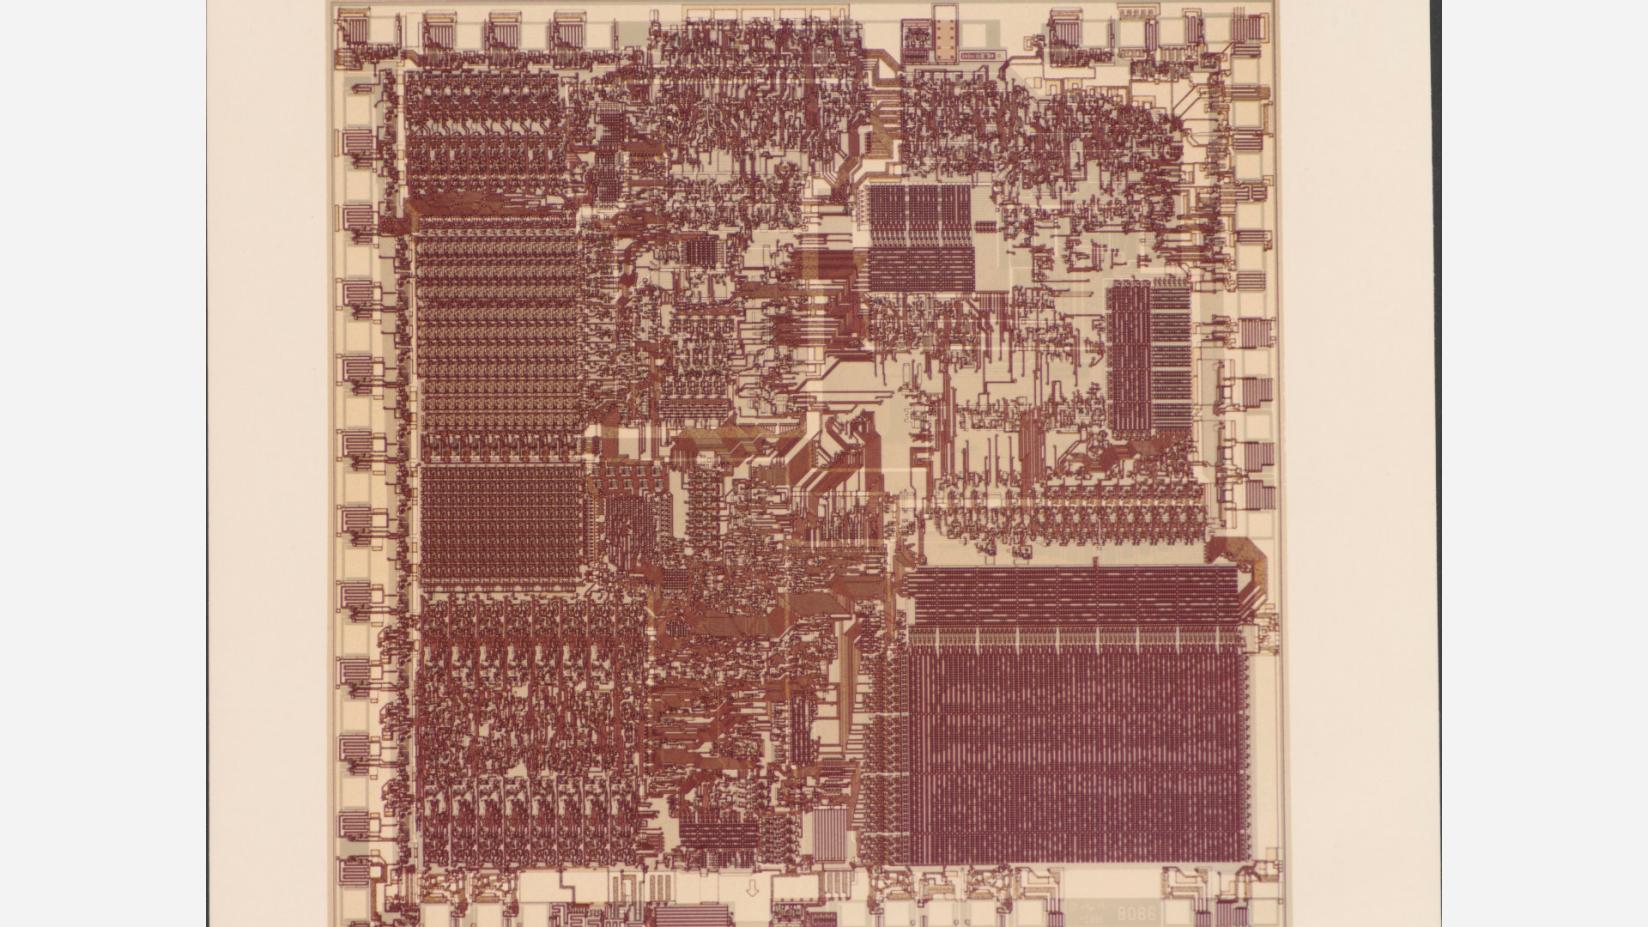 a1135702-8086-microprocessor-die-rwd.jpg.rendition.intel.web.1648.927.jpg